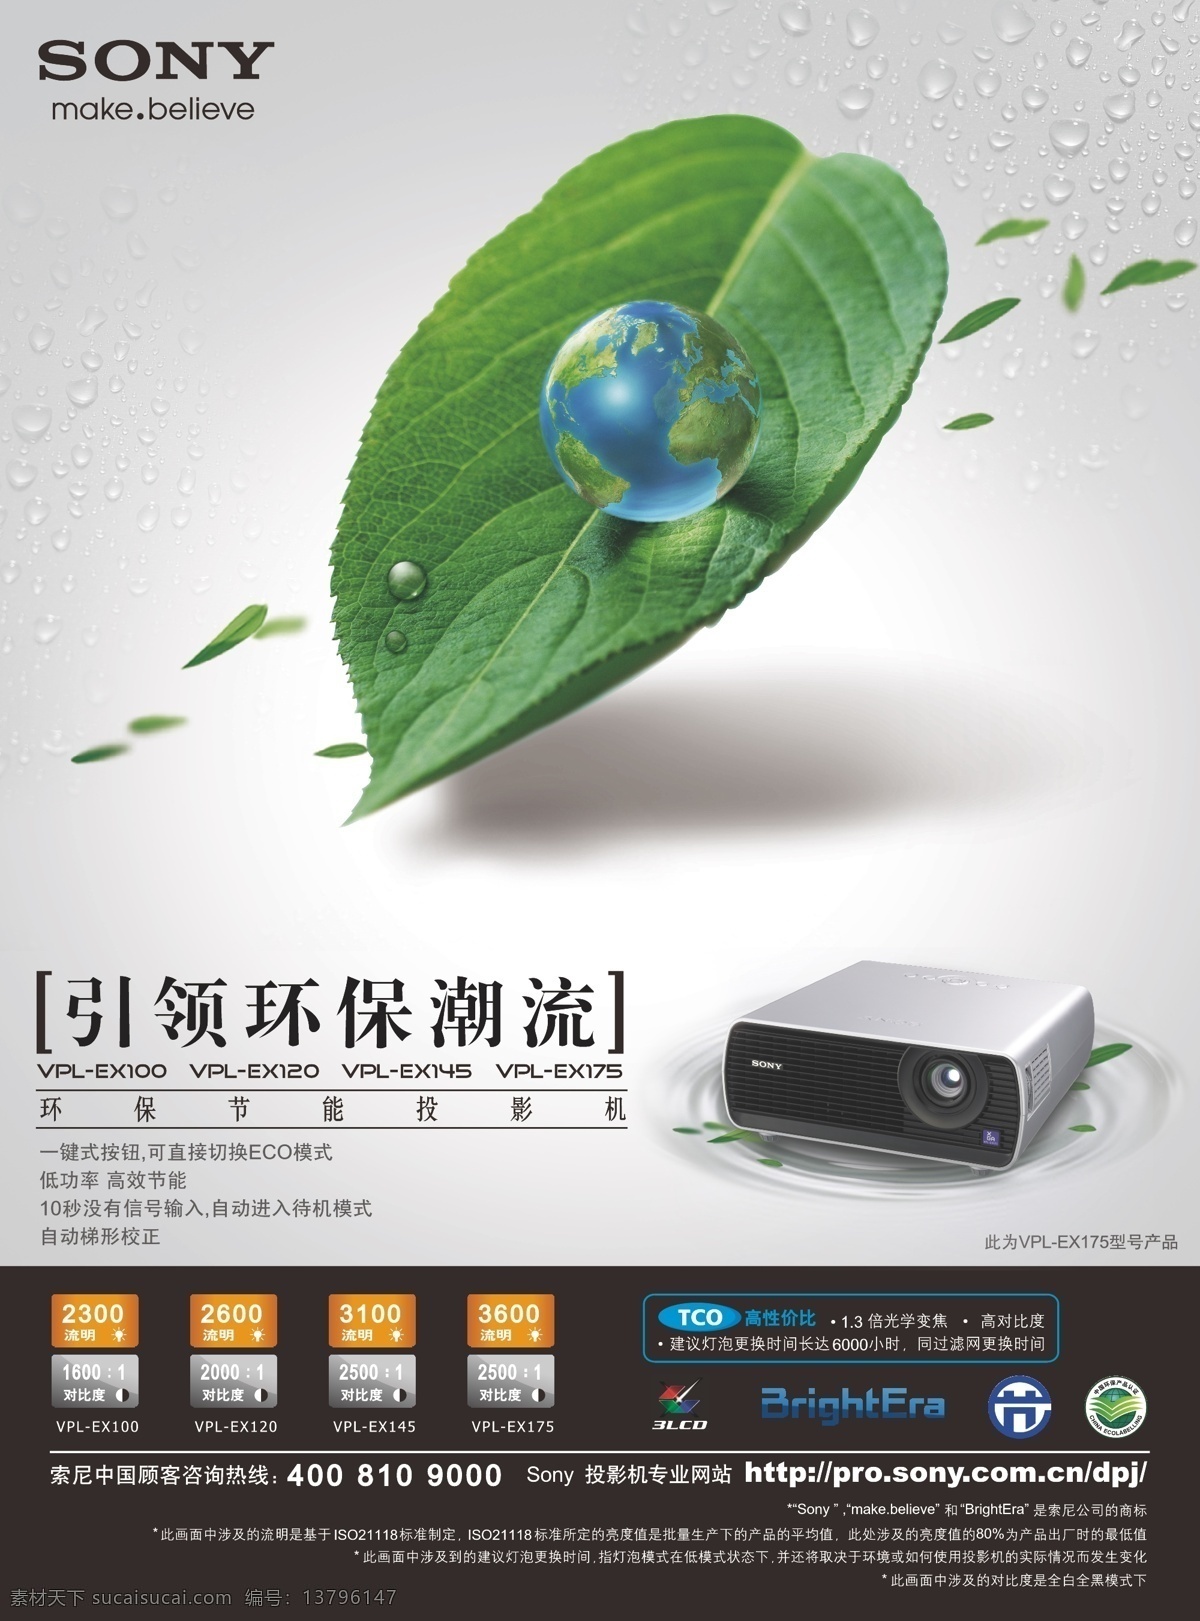 索尼 投影机 宣传单 索尼投影机 ex100 绿叶 地球 环保 广告 矢量 矢量素材 白色